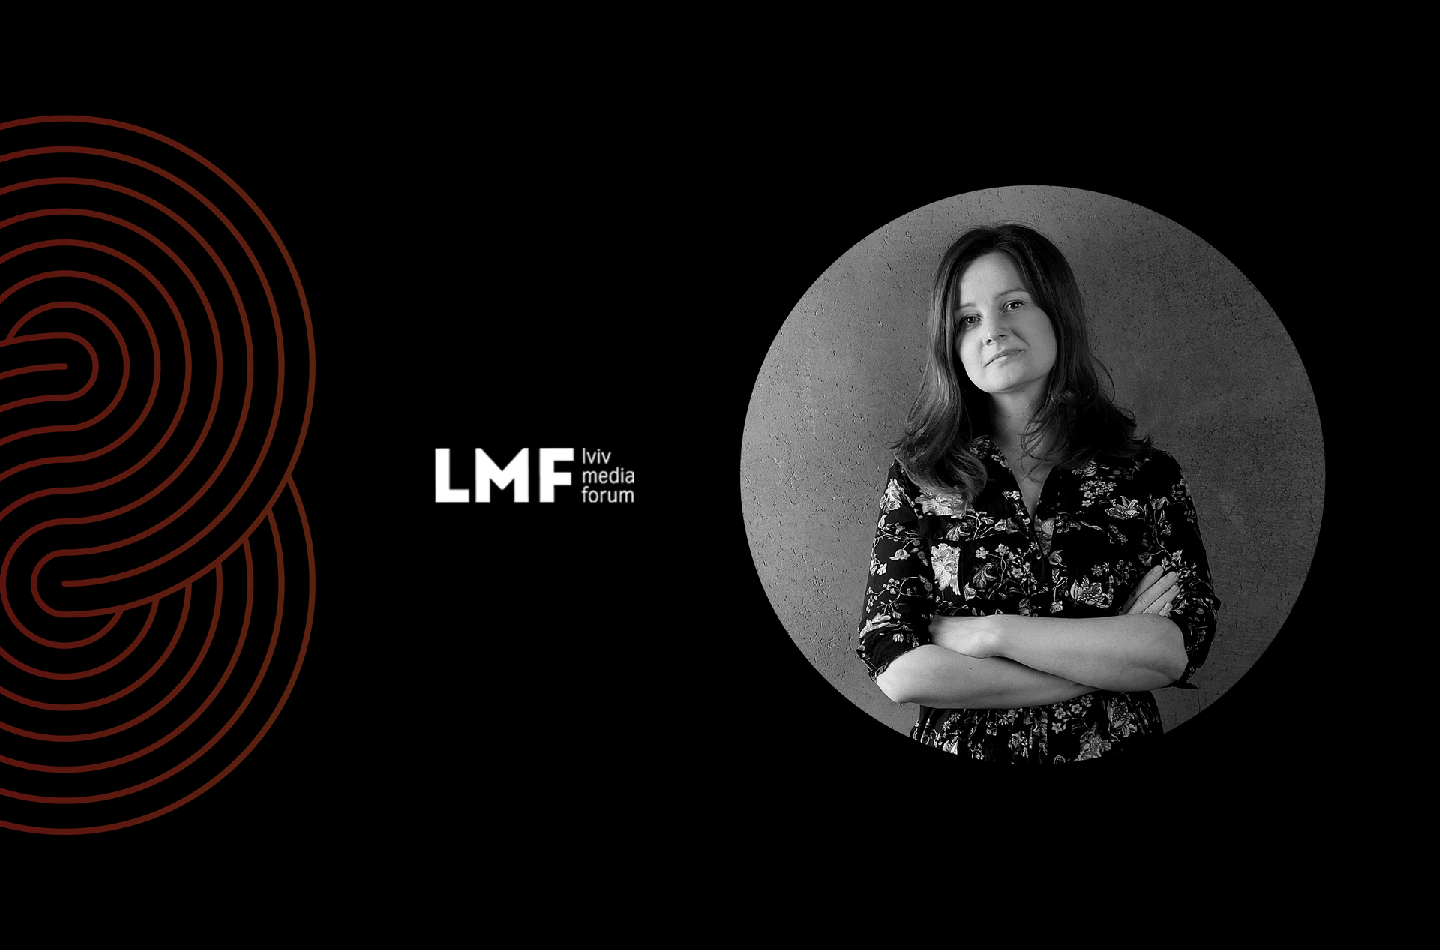 Польська журналістка та репортерка, лауреатка премії Капусцінського Катажина Кобилярчик відвідає LMF 2021